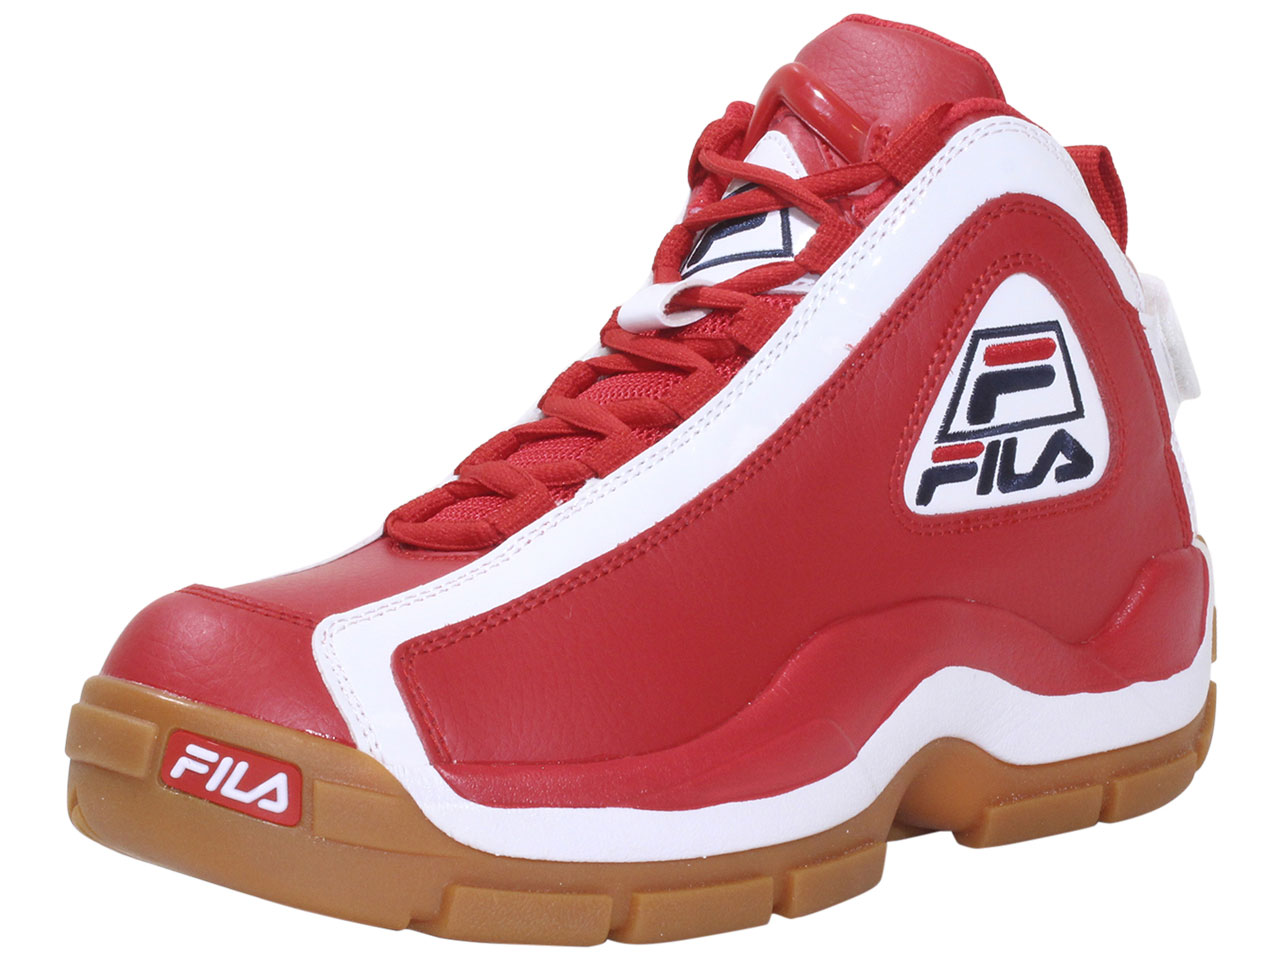 Fila Men's Grant-Hill-2 Basketball Sneakers Red/White/Gum Sz: 8 ...